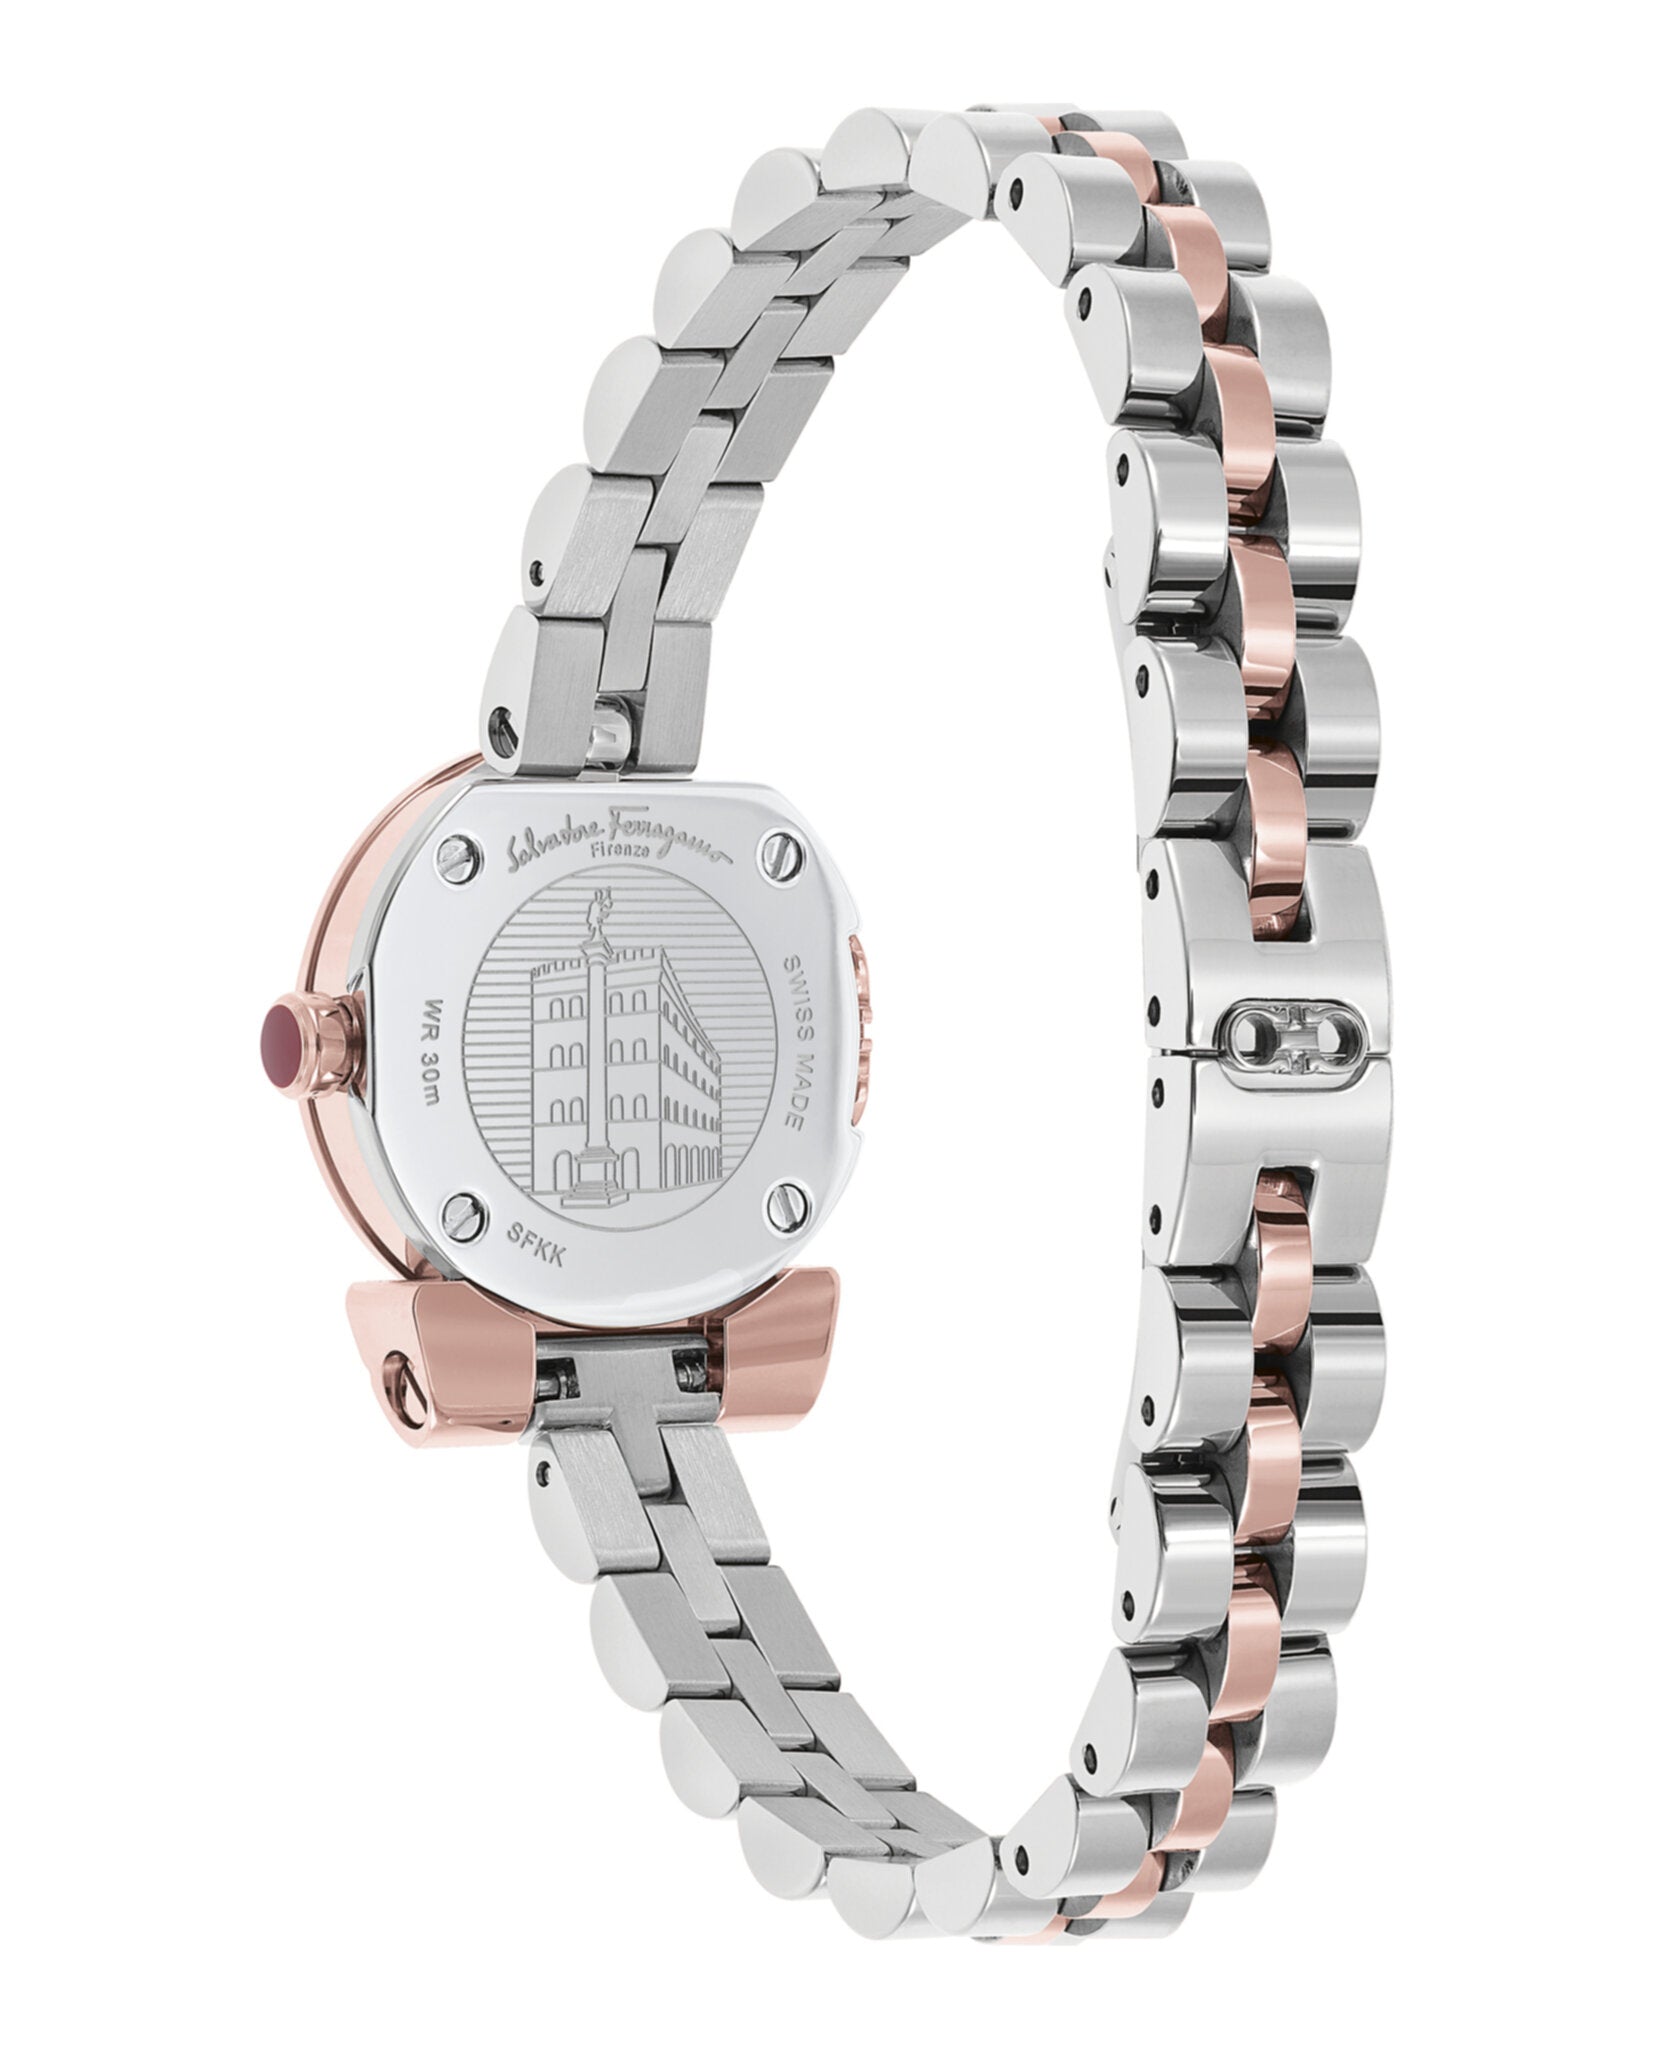 Gancino Bracelet Watch